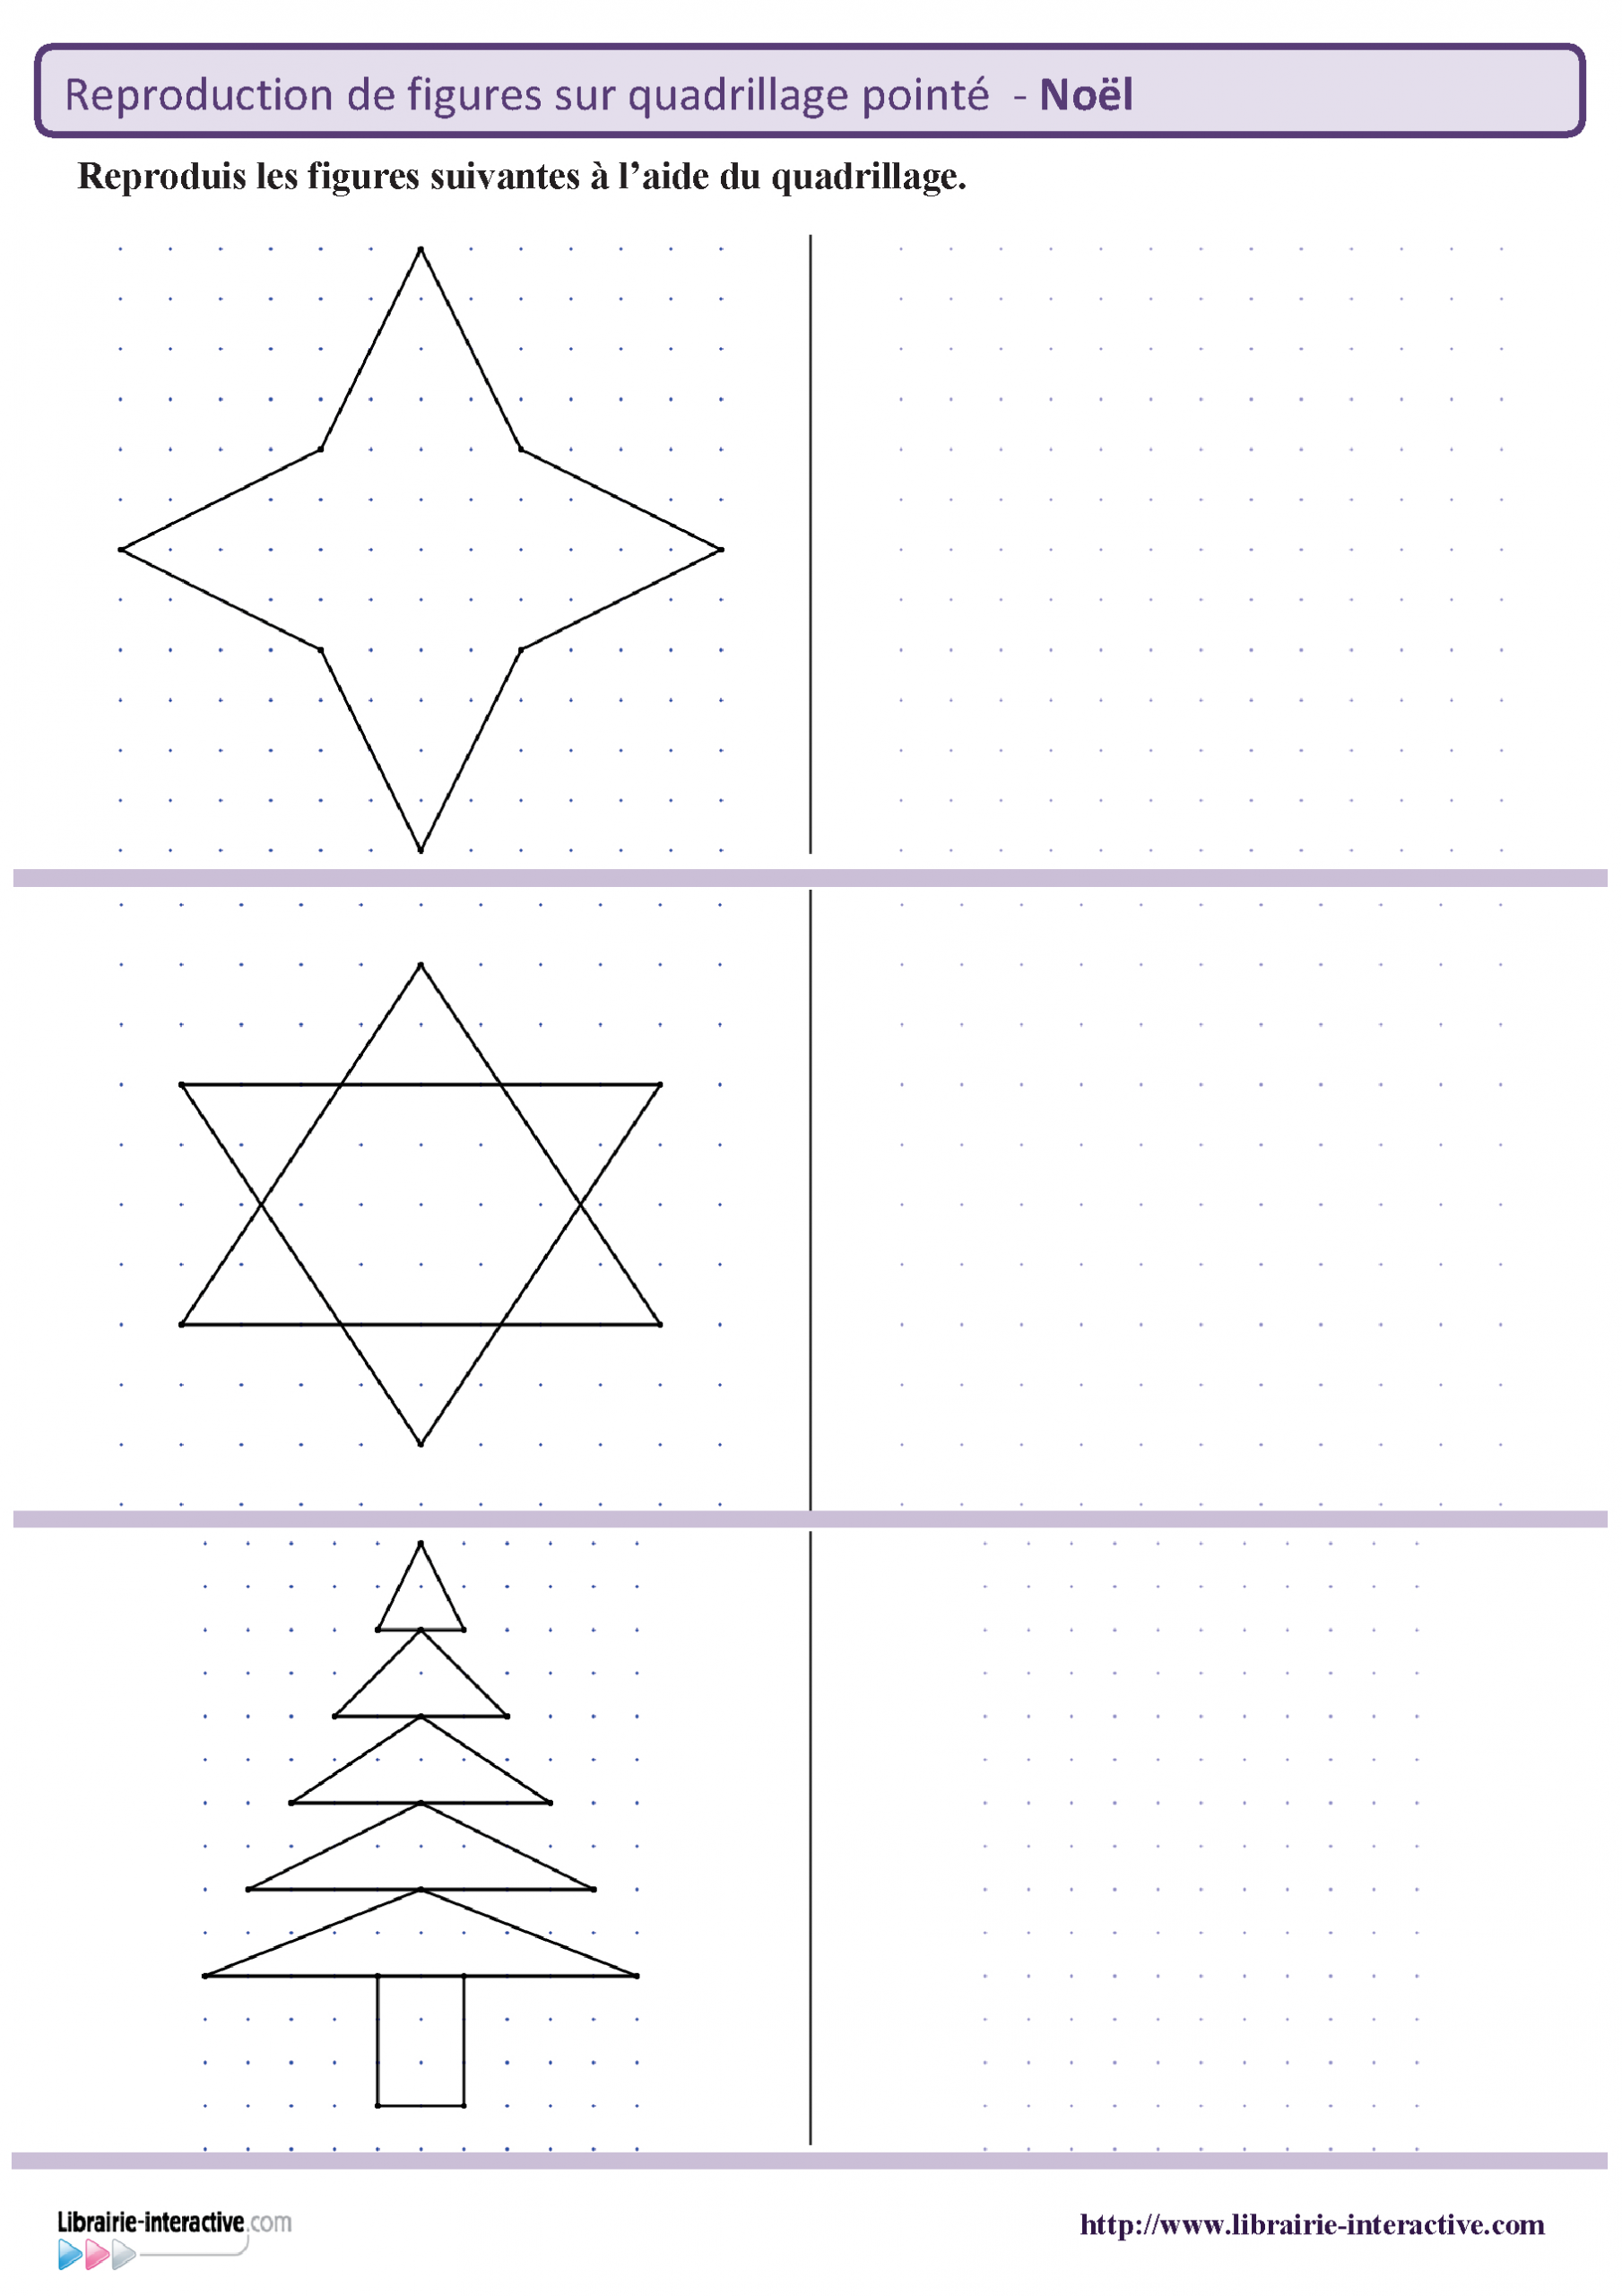 Des Figures Géométriques Sur Le Thème De Noël À Reproduire dedans Reproduction De Figures Sur Quadrillage Ce1